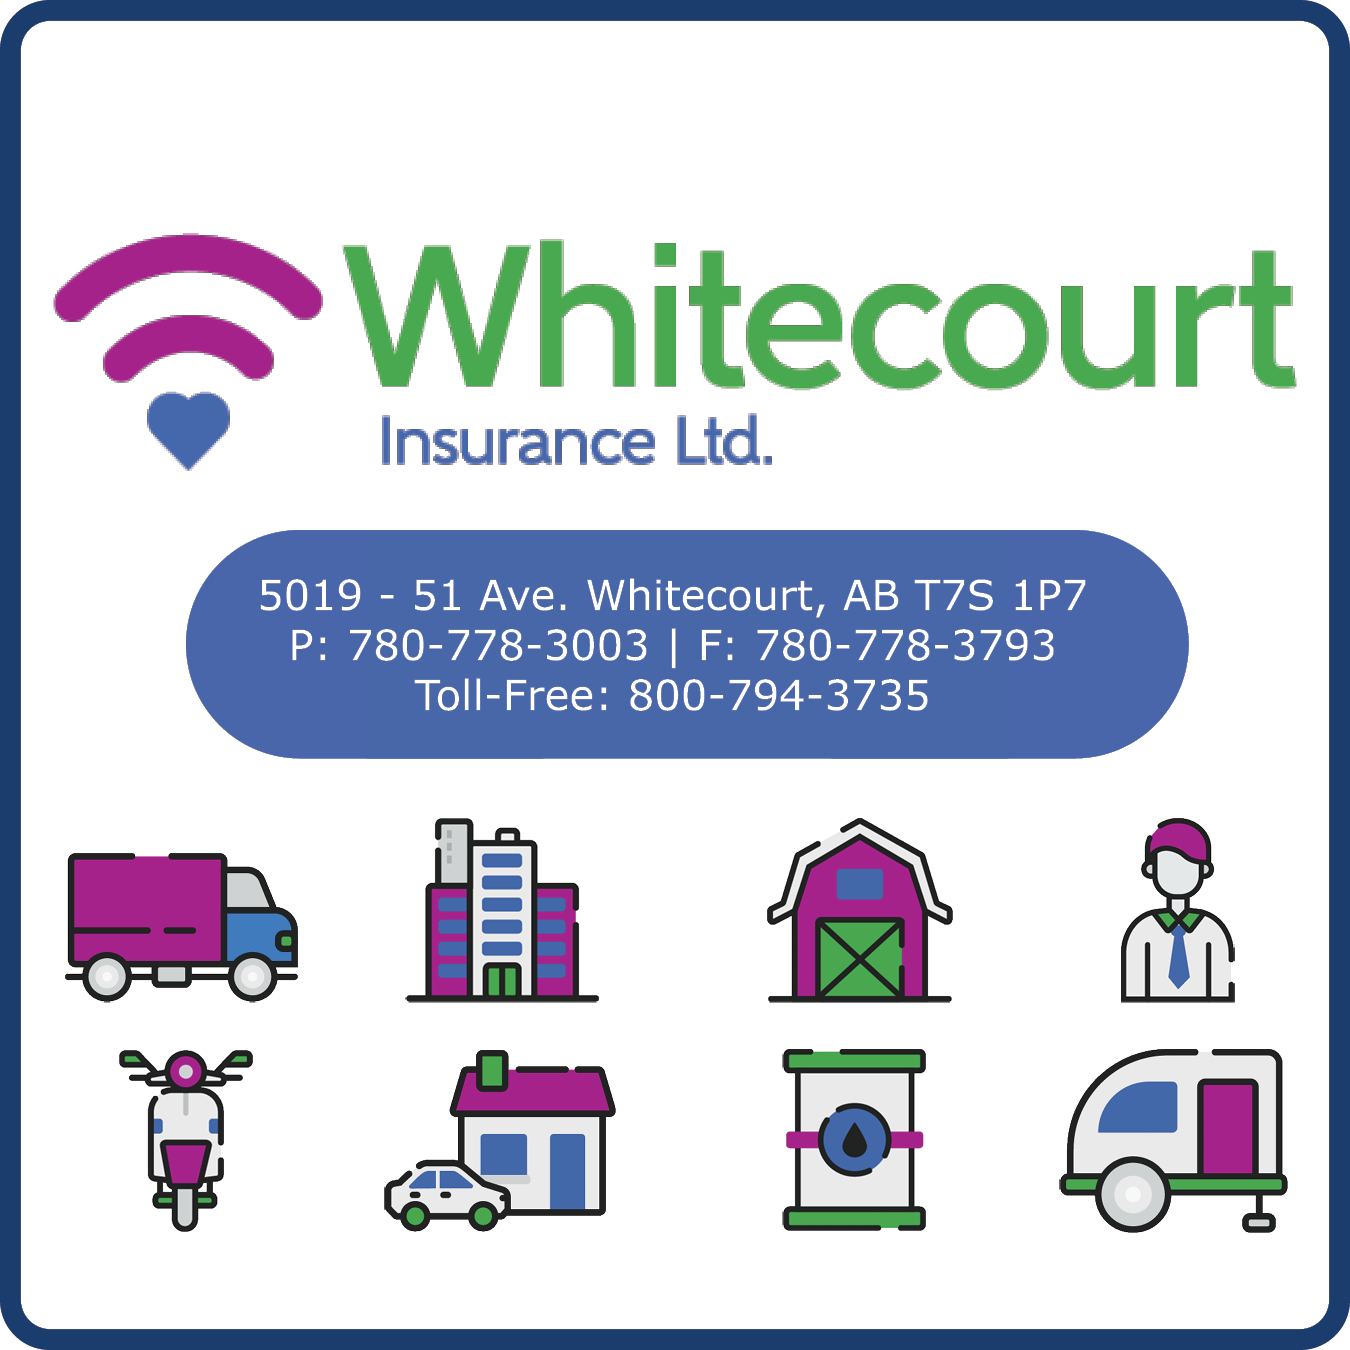 Whitecourt Insurance Ltd.